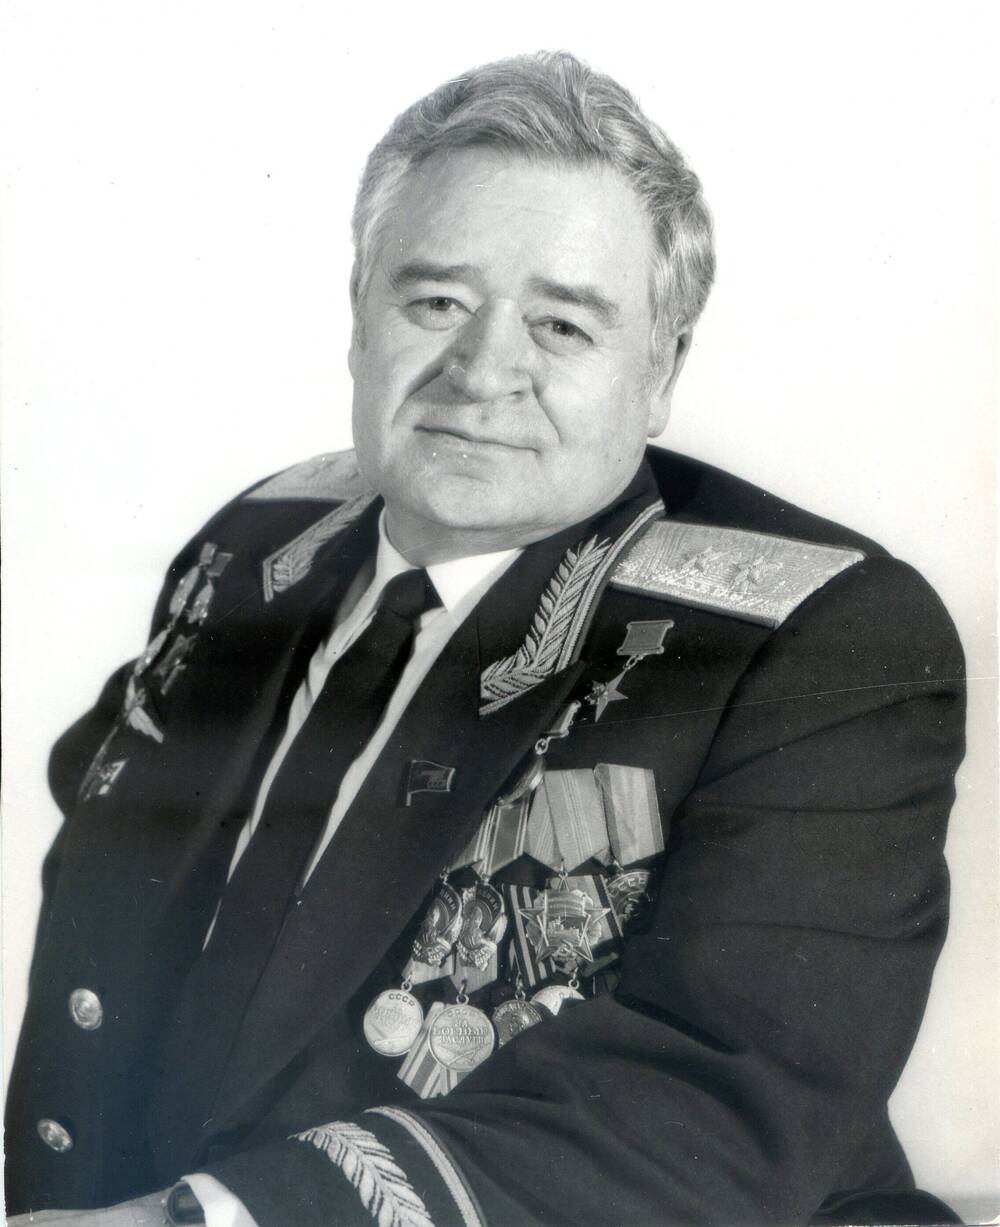 Фотопортрет погрудный анфас. П.С.Плешаков сидит в генеральской форме с наградами на груди 1980-е гг.